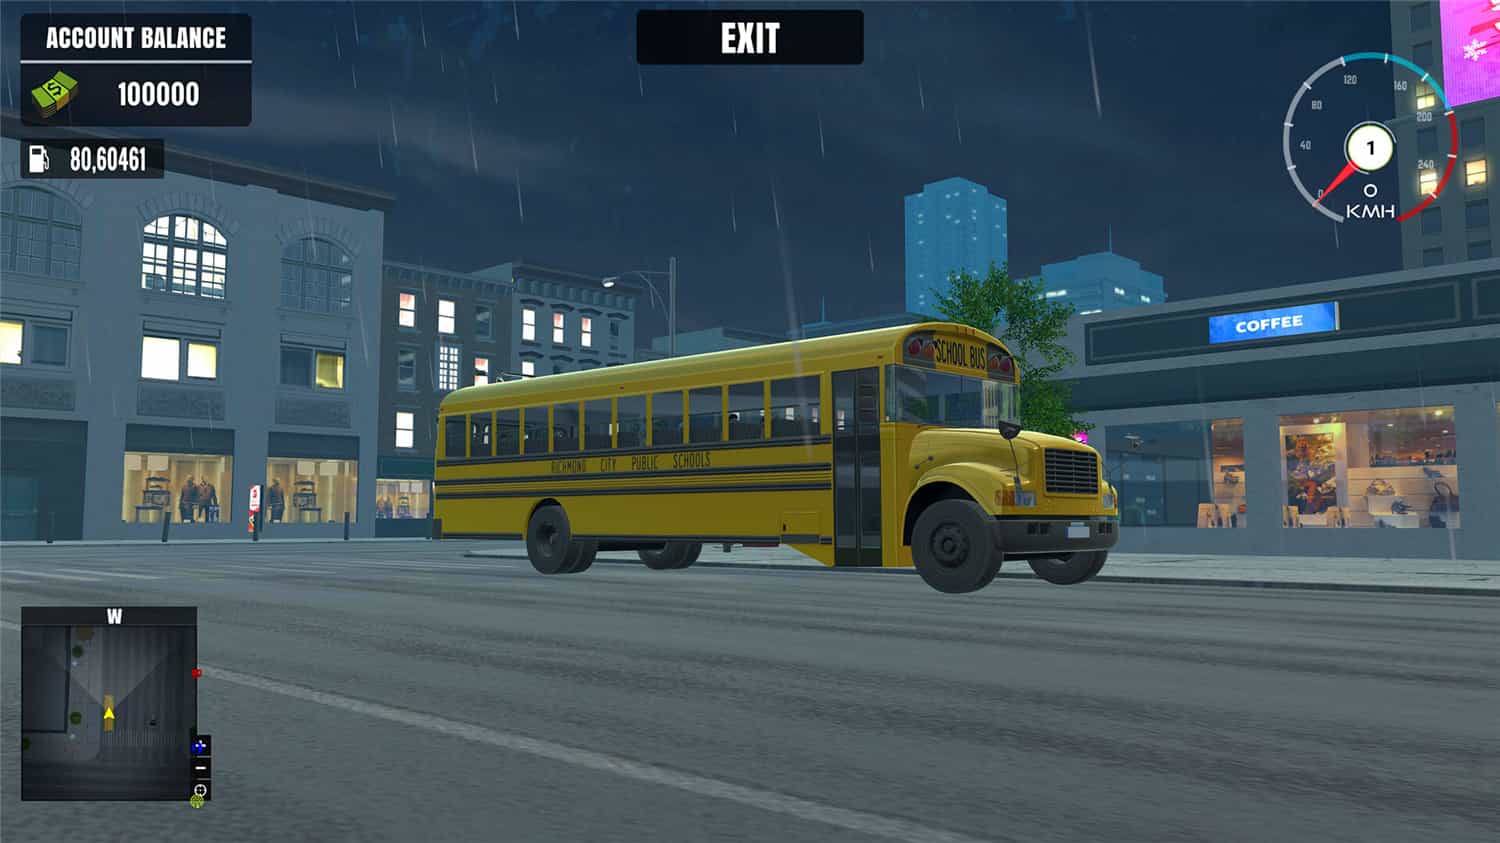 校车驾驶模拟器/School Bus Driving Simulator